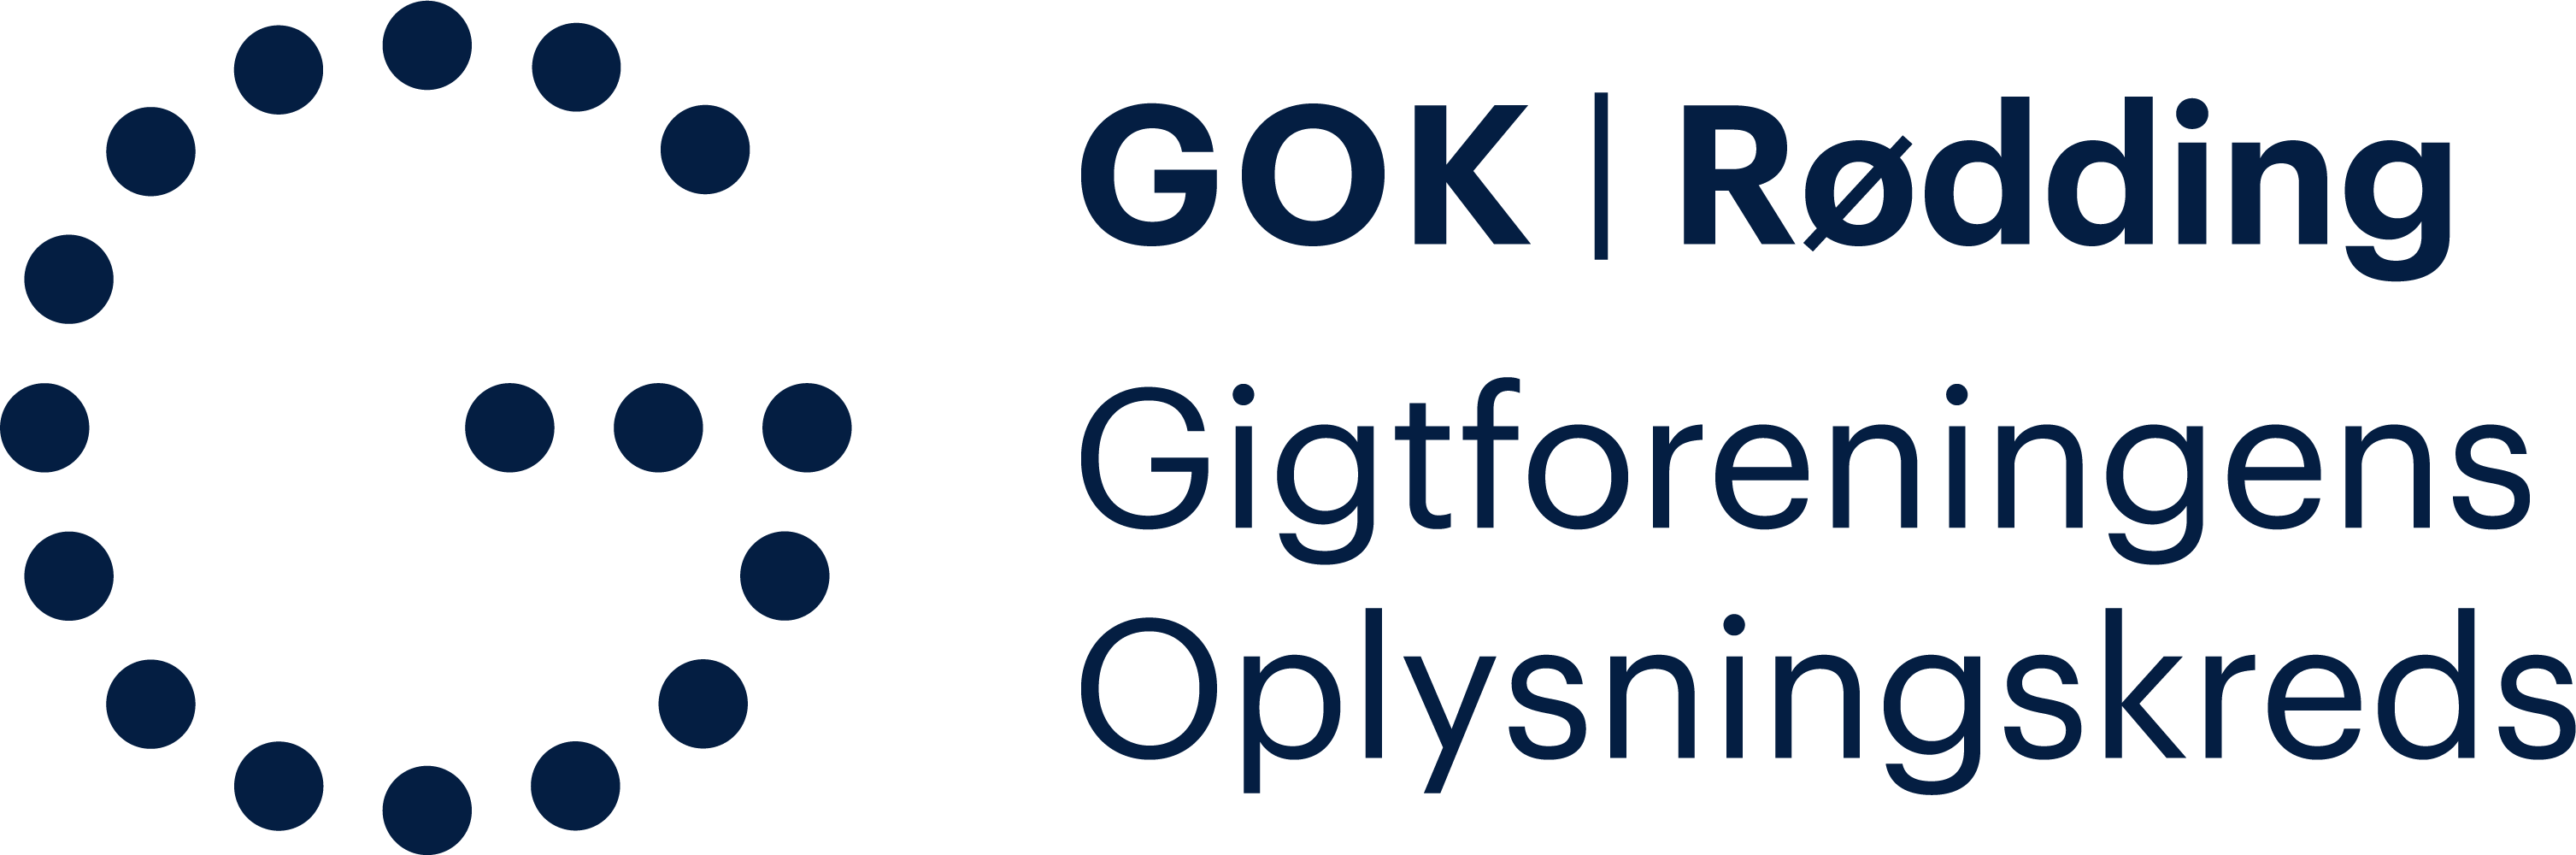 GOK Rødding logo